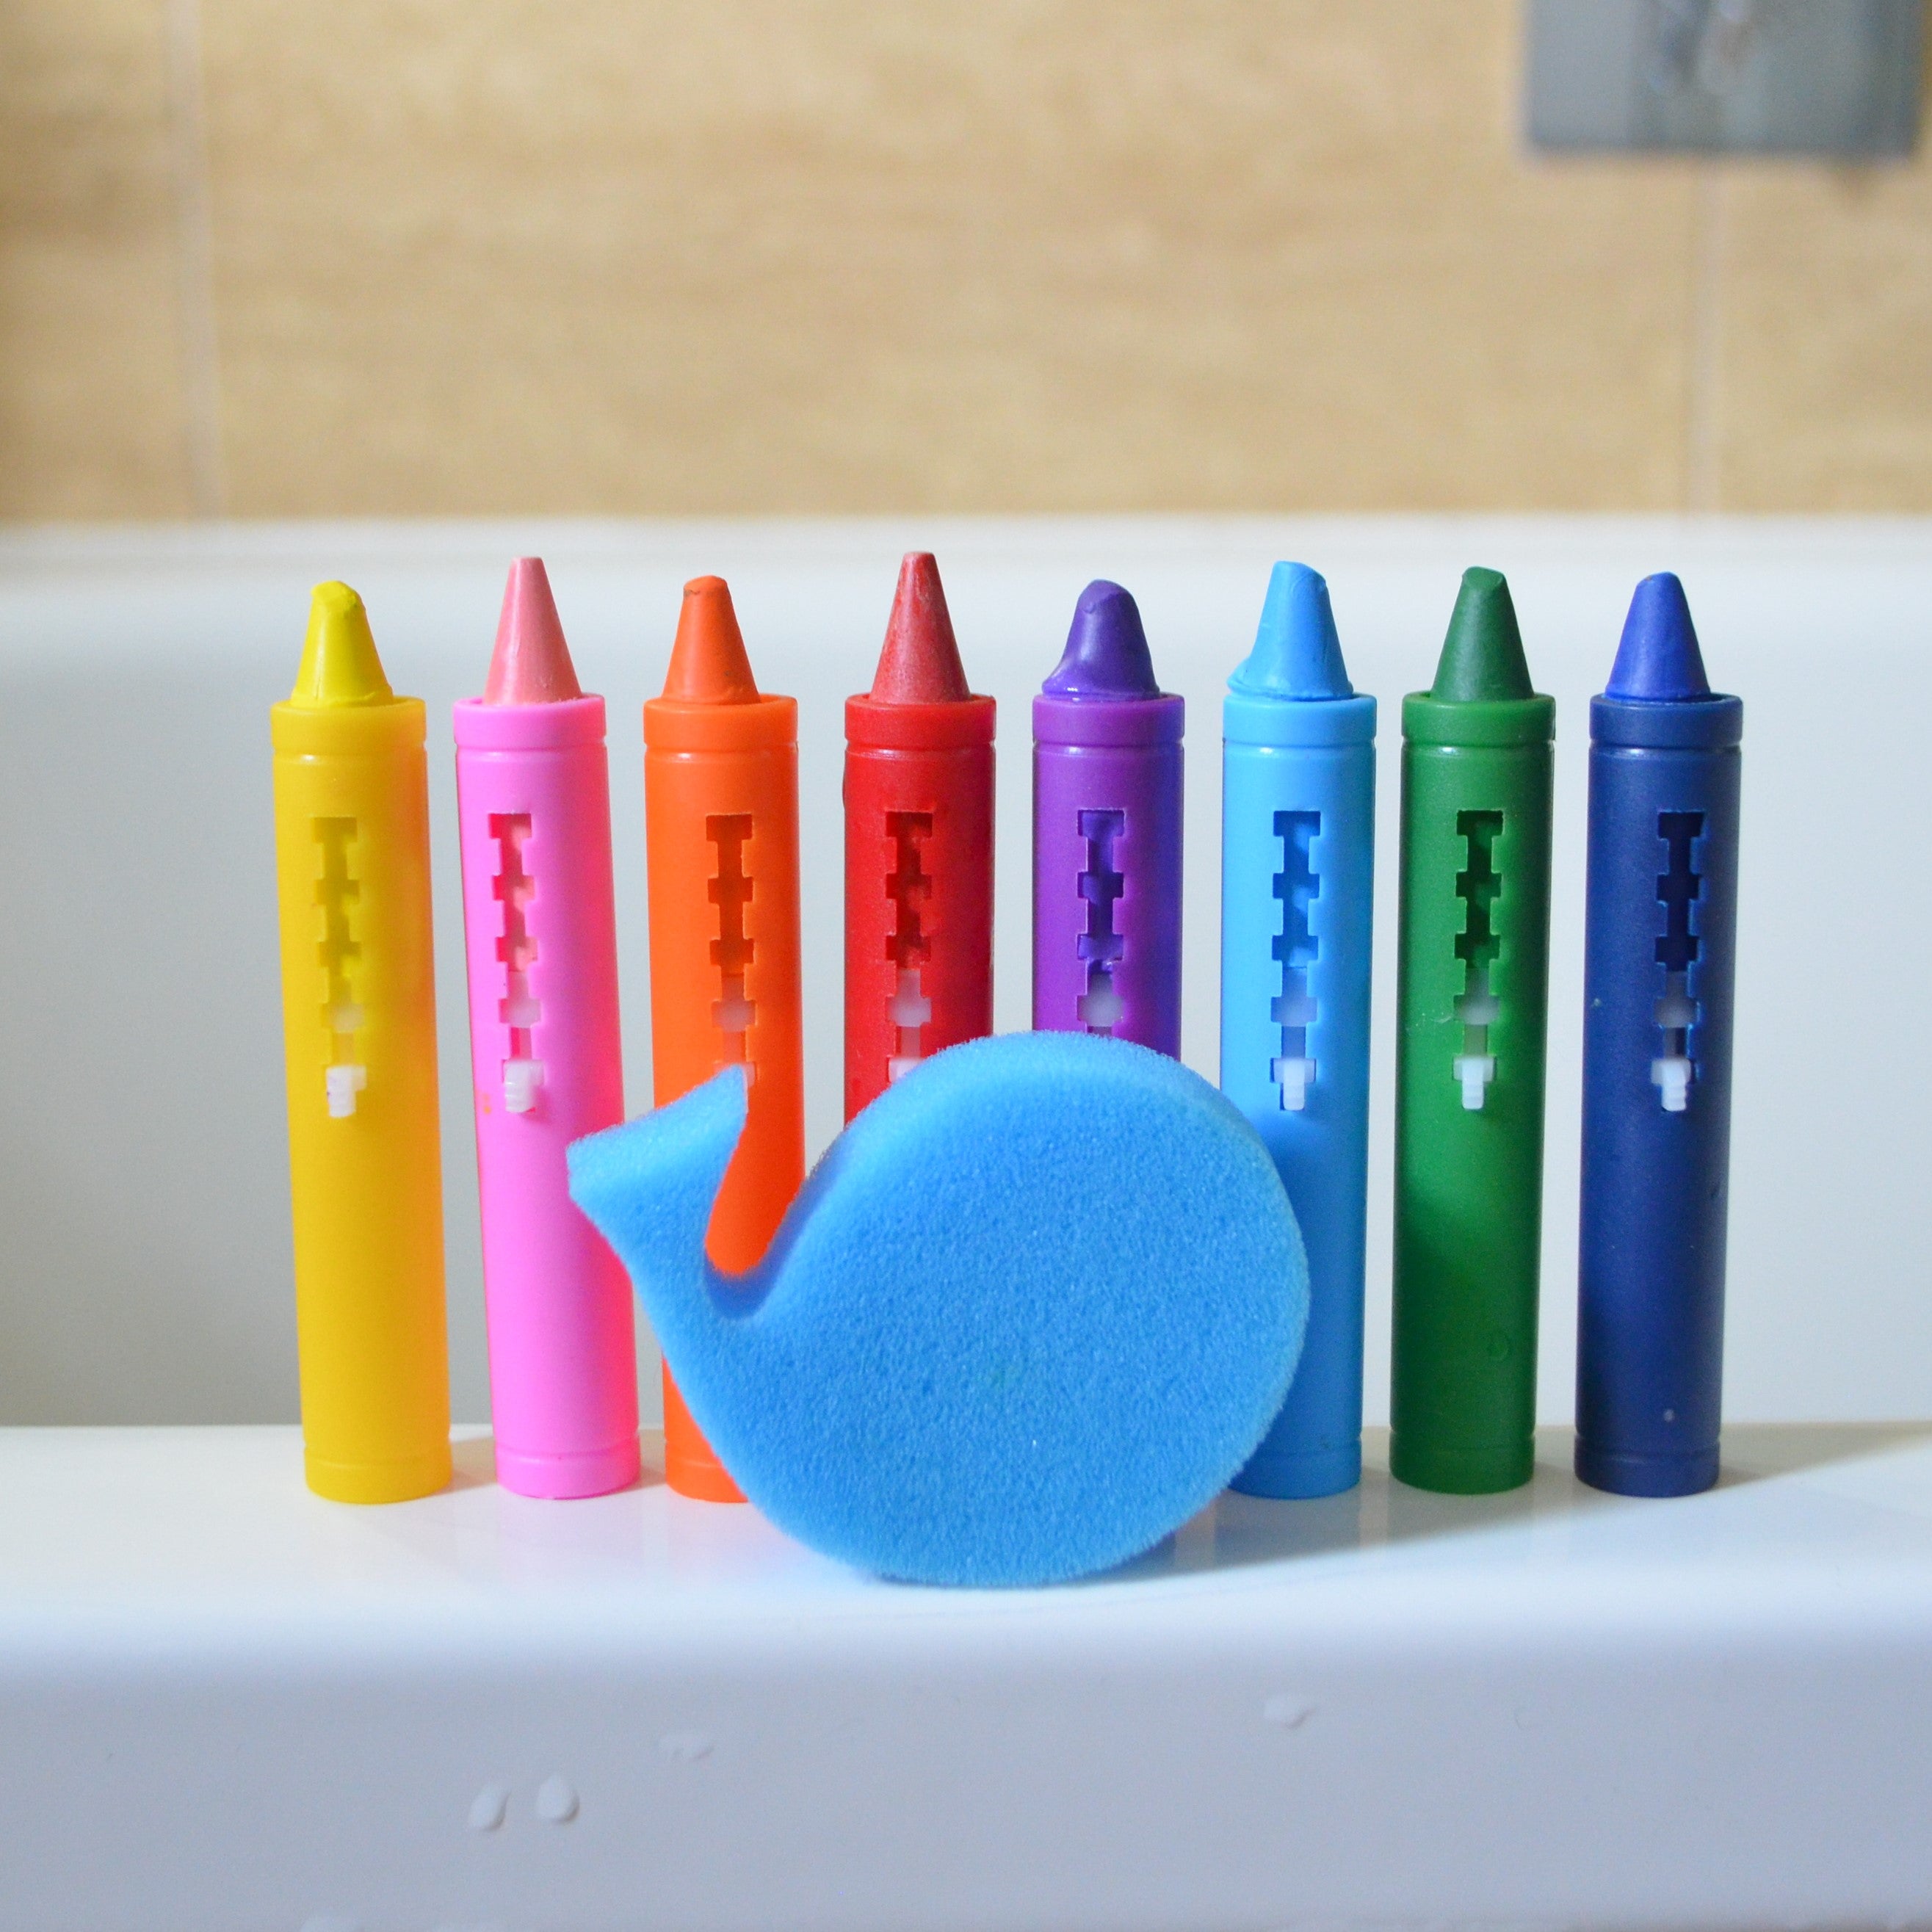 Bath Crayons – Rockin' A B